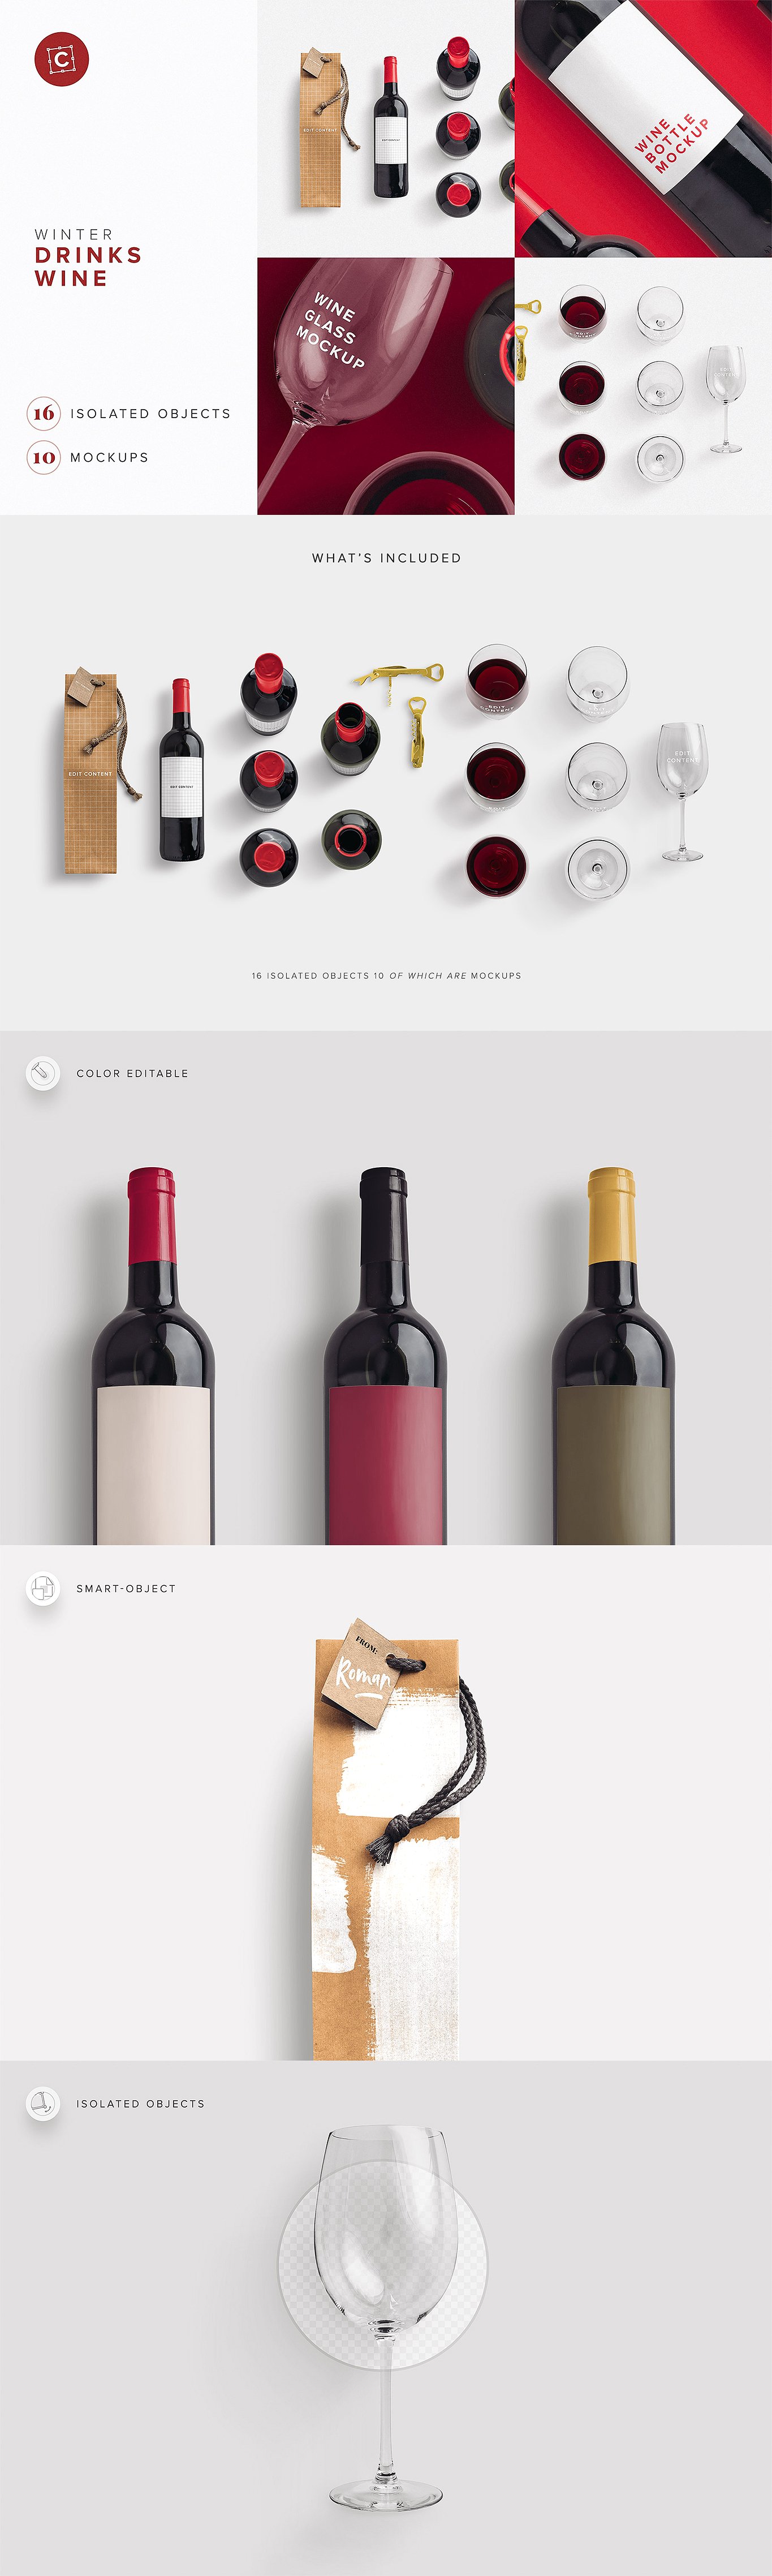 高端葡萄酒瓶酒杯和礼品袋PSD样机 Wine Bottle Glass Bag PSD Mockup插图6